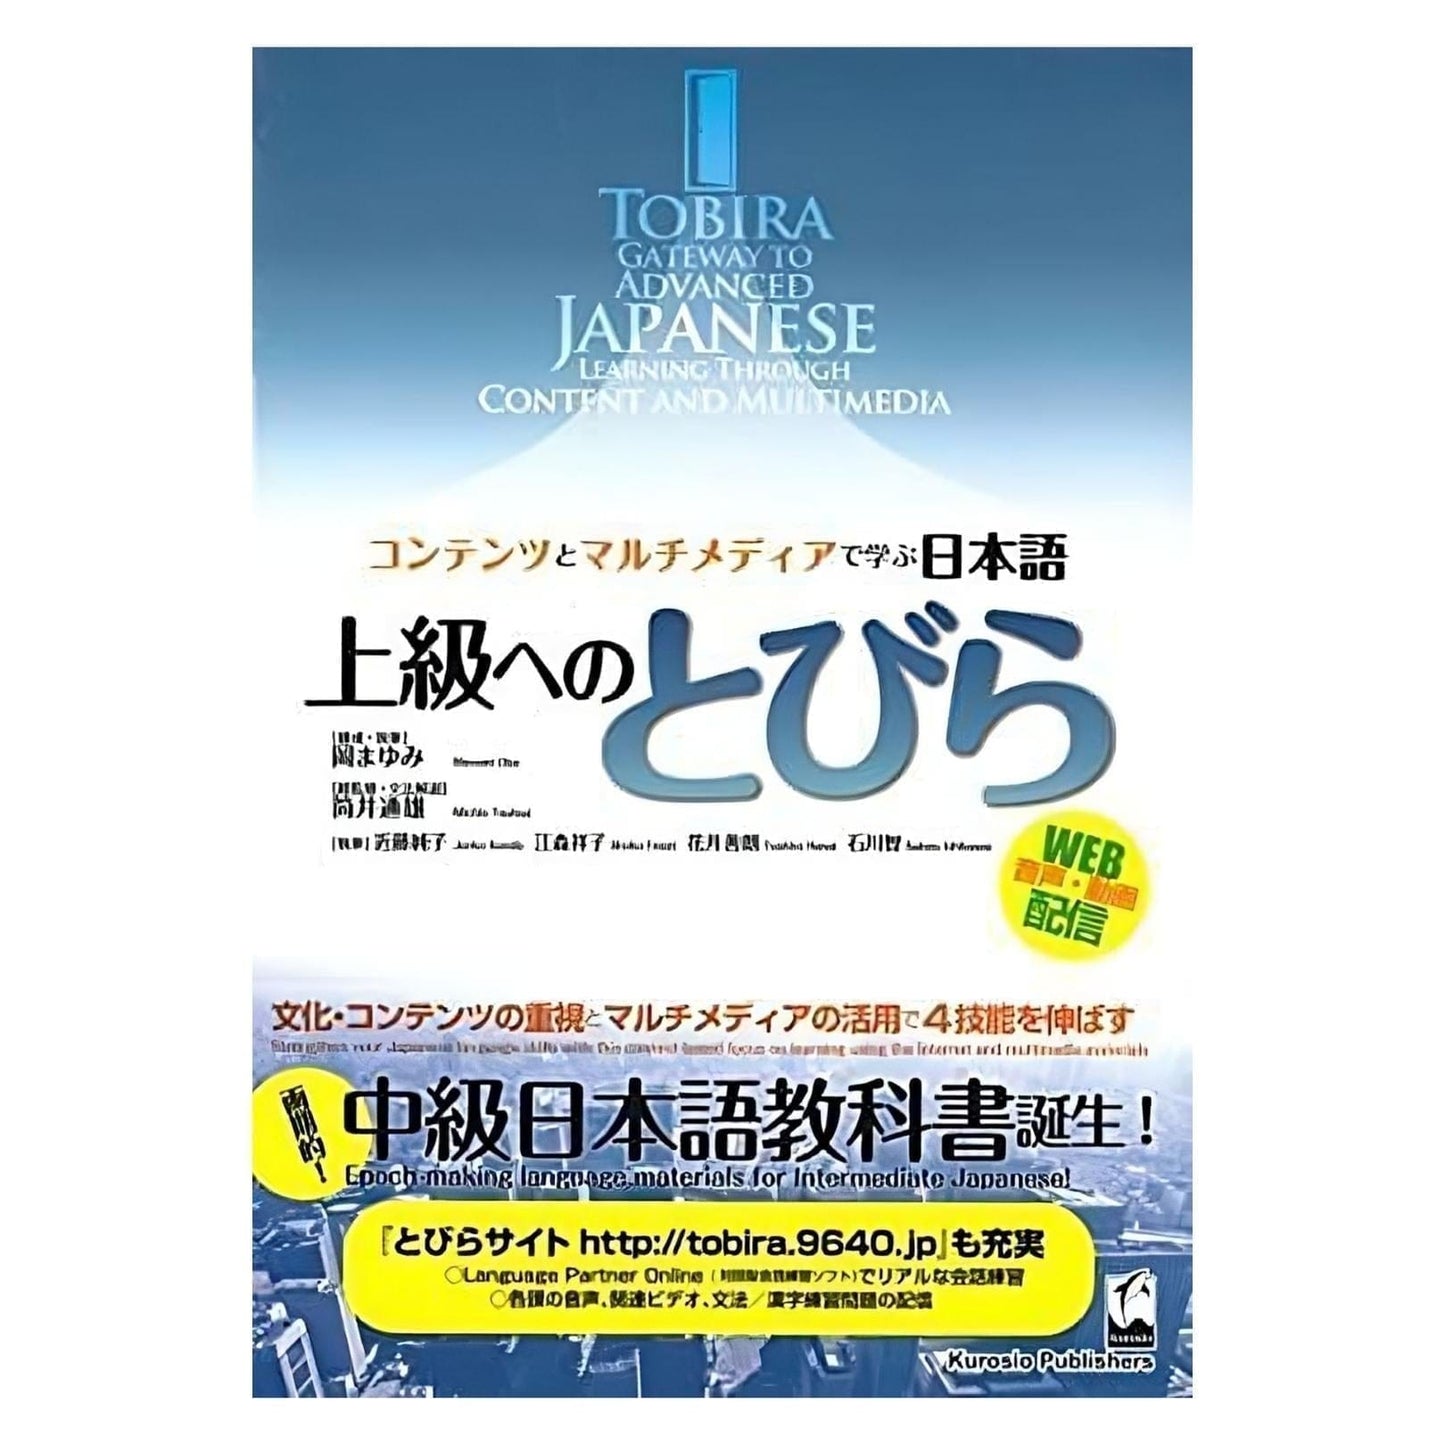 日语手册 | Tobira 通往高级日语的门户 ChitoroShop